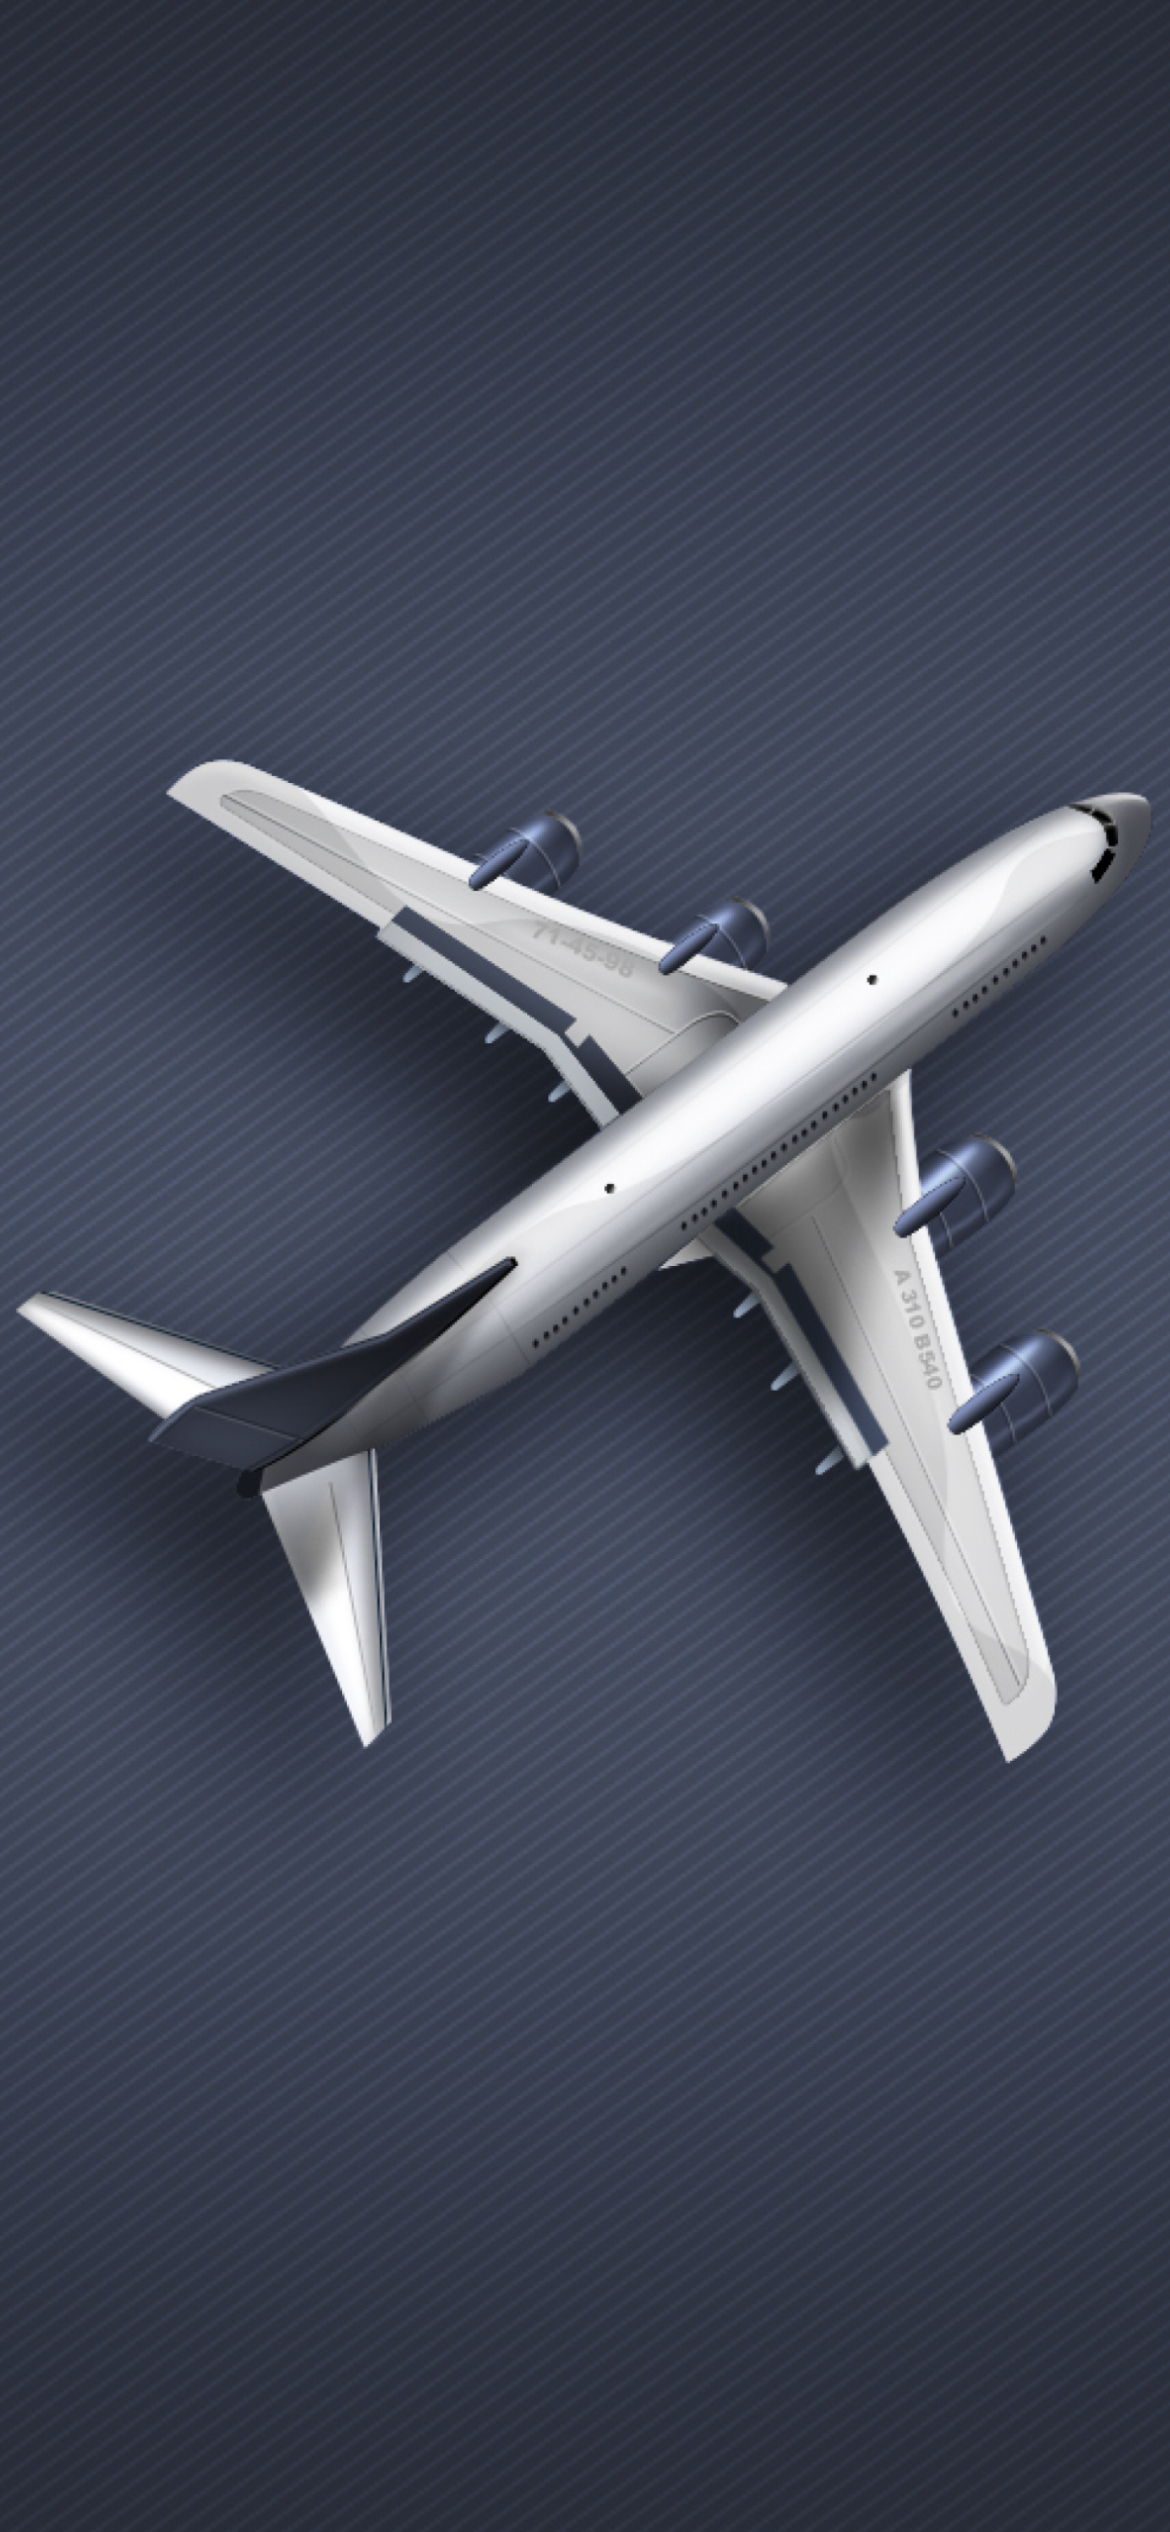 Boeing Aircraft wallpaper 1170x2532